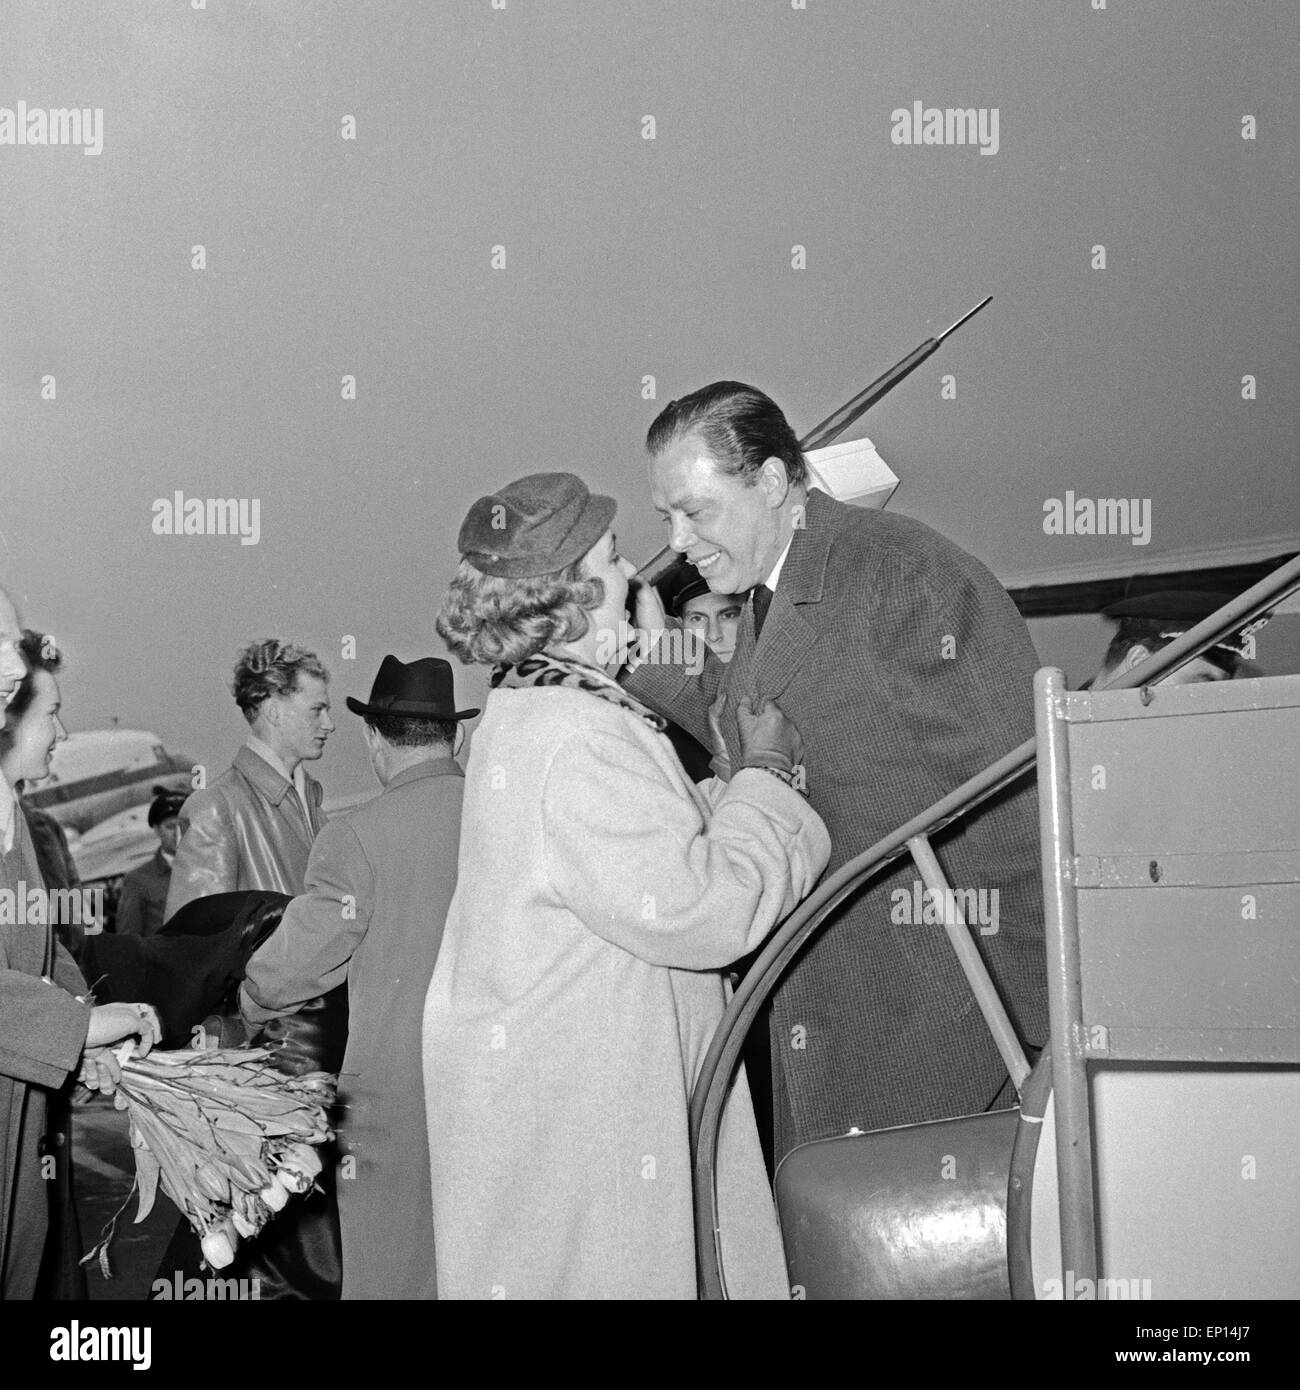 Helmut Zacharias wird von seiner Frau Hella am Flughafen Hamburg bei der Ankunft begrüßt, Deutschland 1950er Jahre. His wife Hel Stock Photo